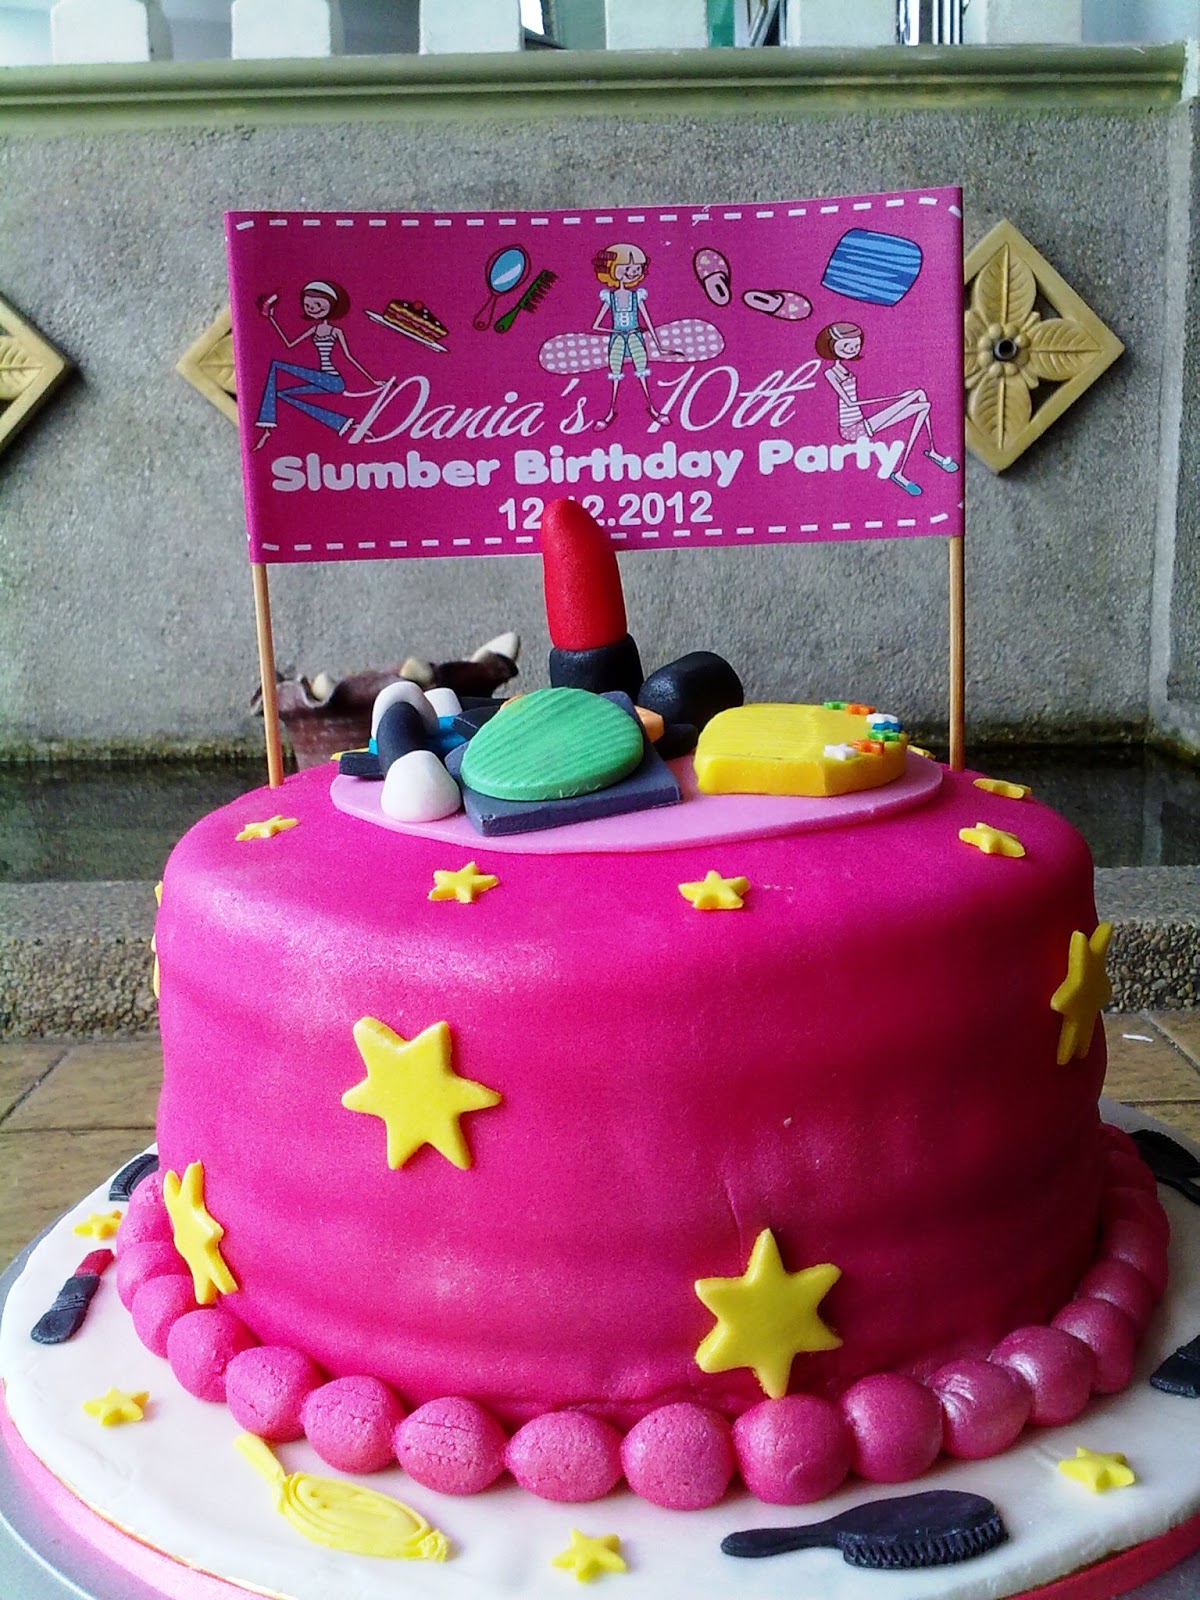 Dlovelymuffinbakery: Dania's 10th Slumber Birthday Party